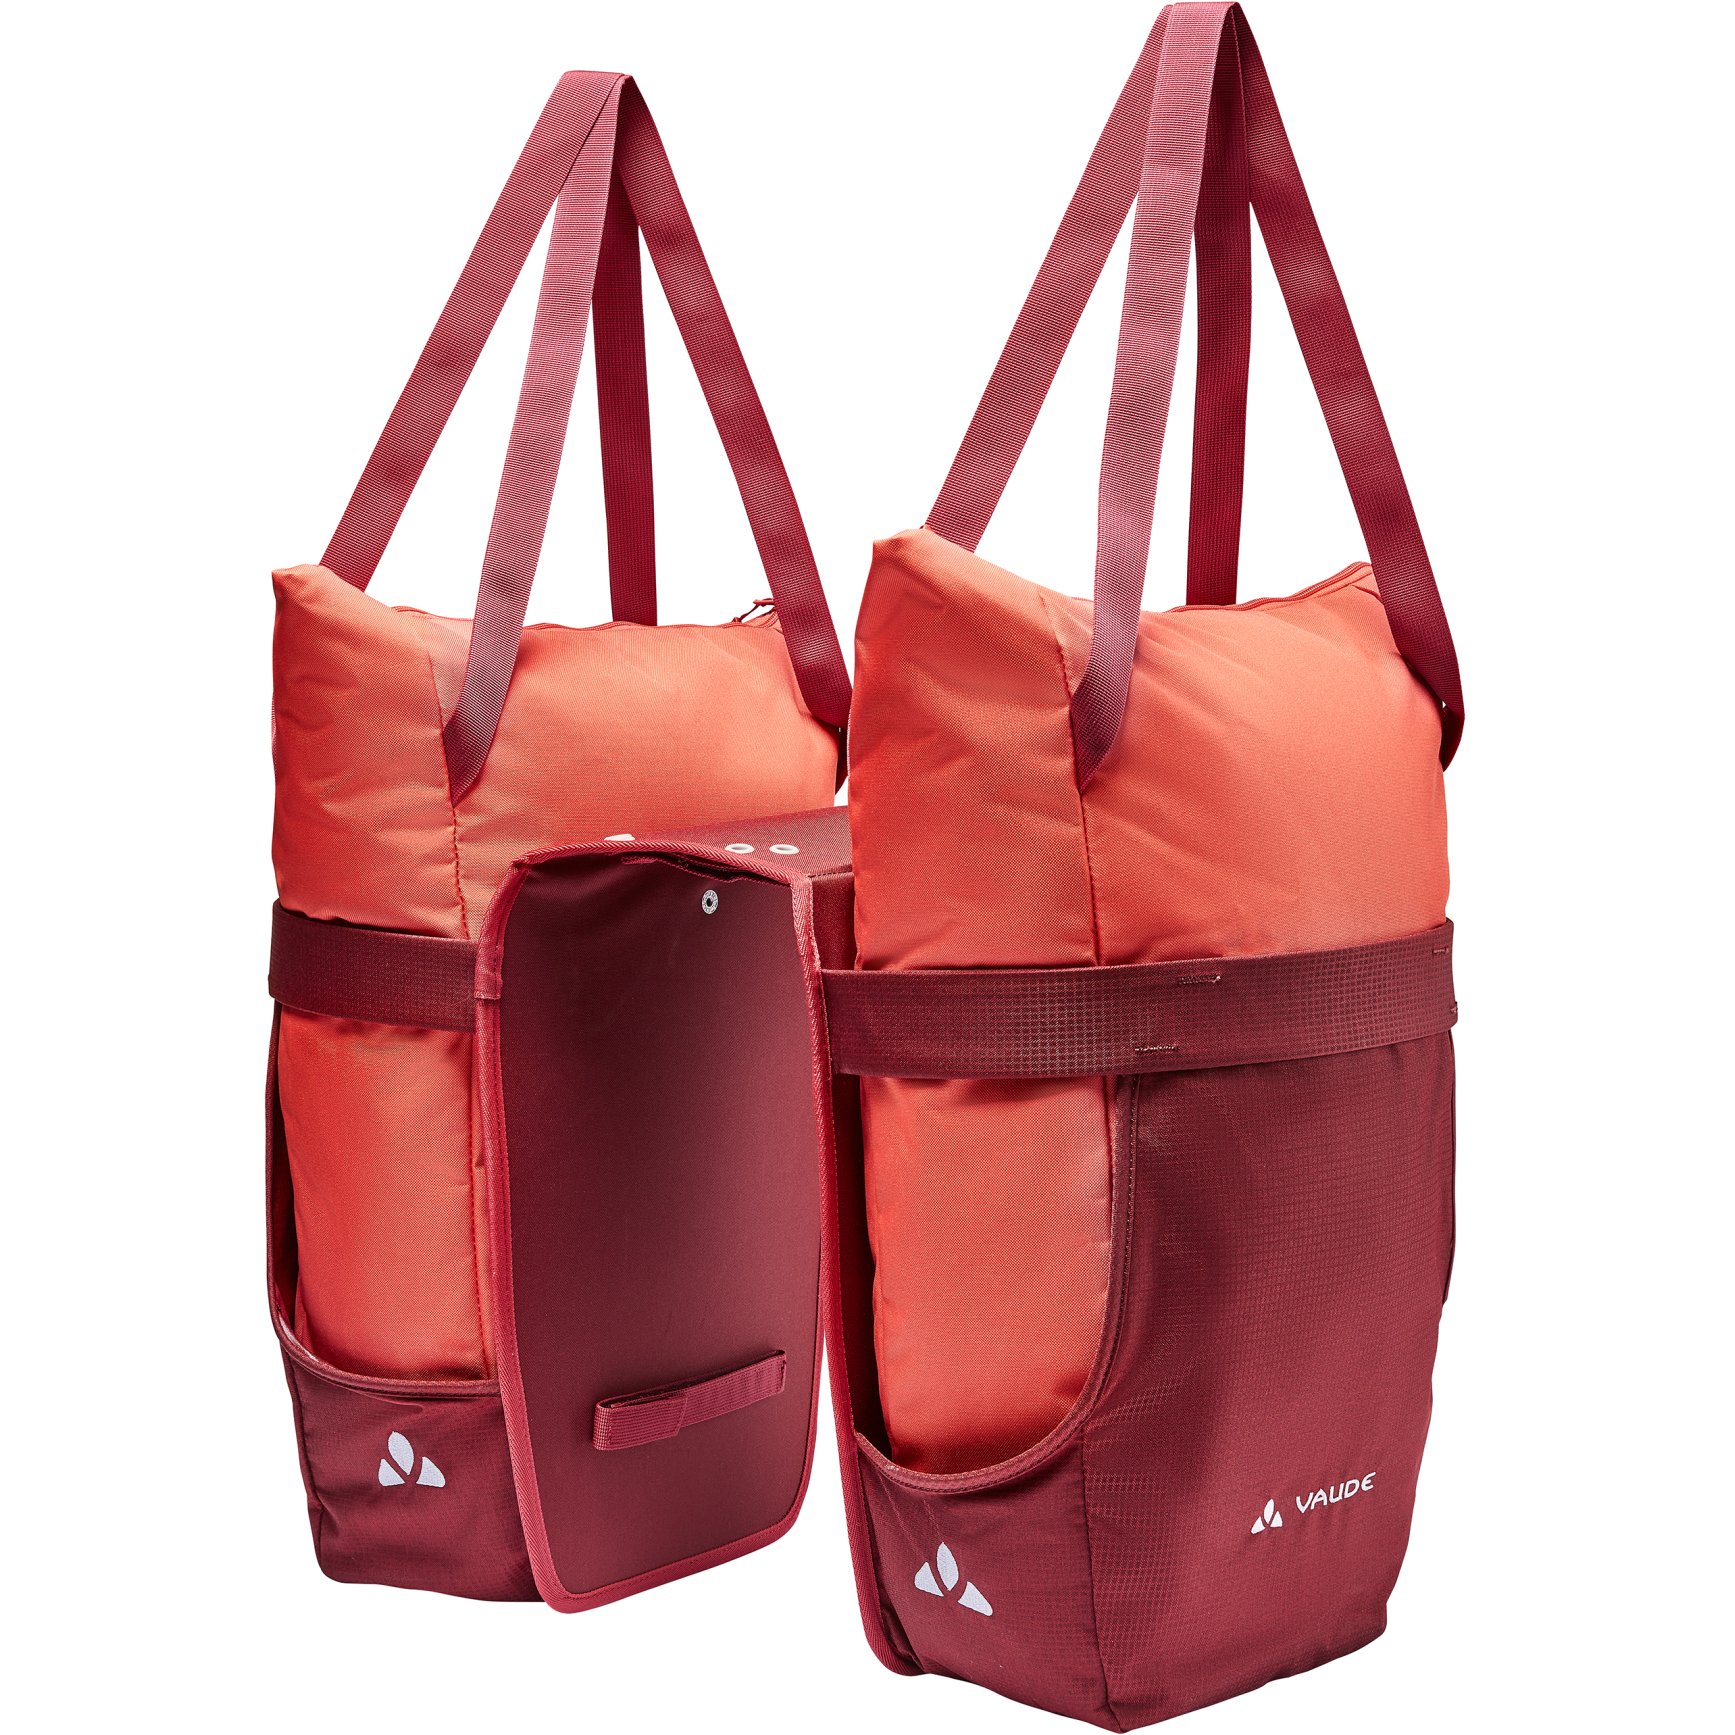 Produktbild von Vaude TwinShopper Gepäckträgertasche 2x22L - hotchili